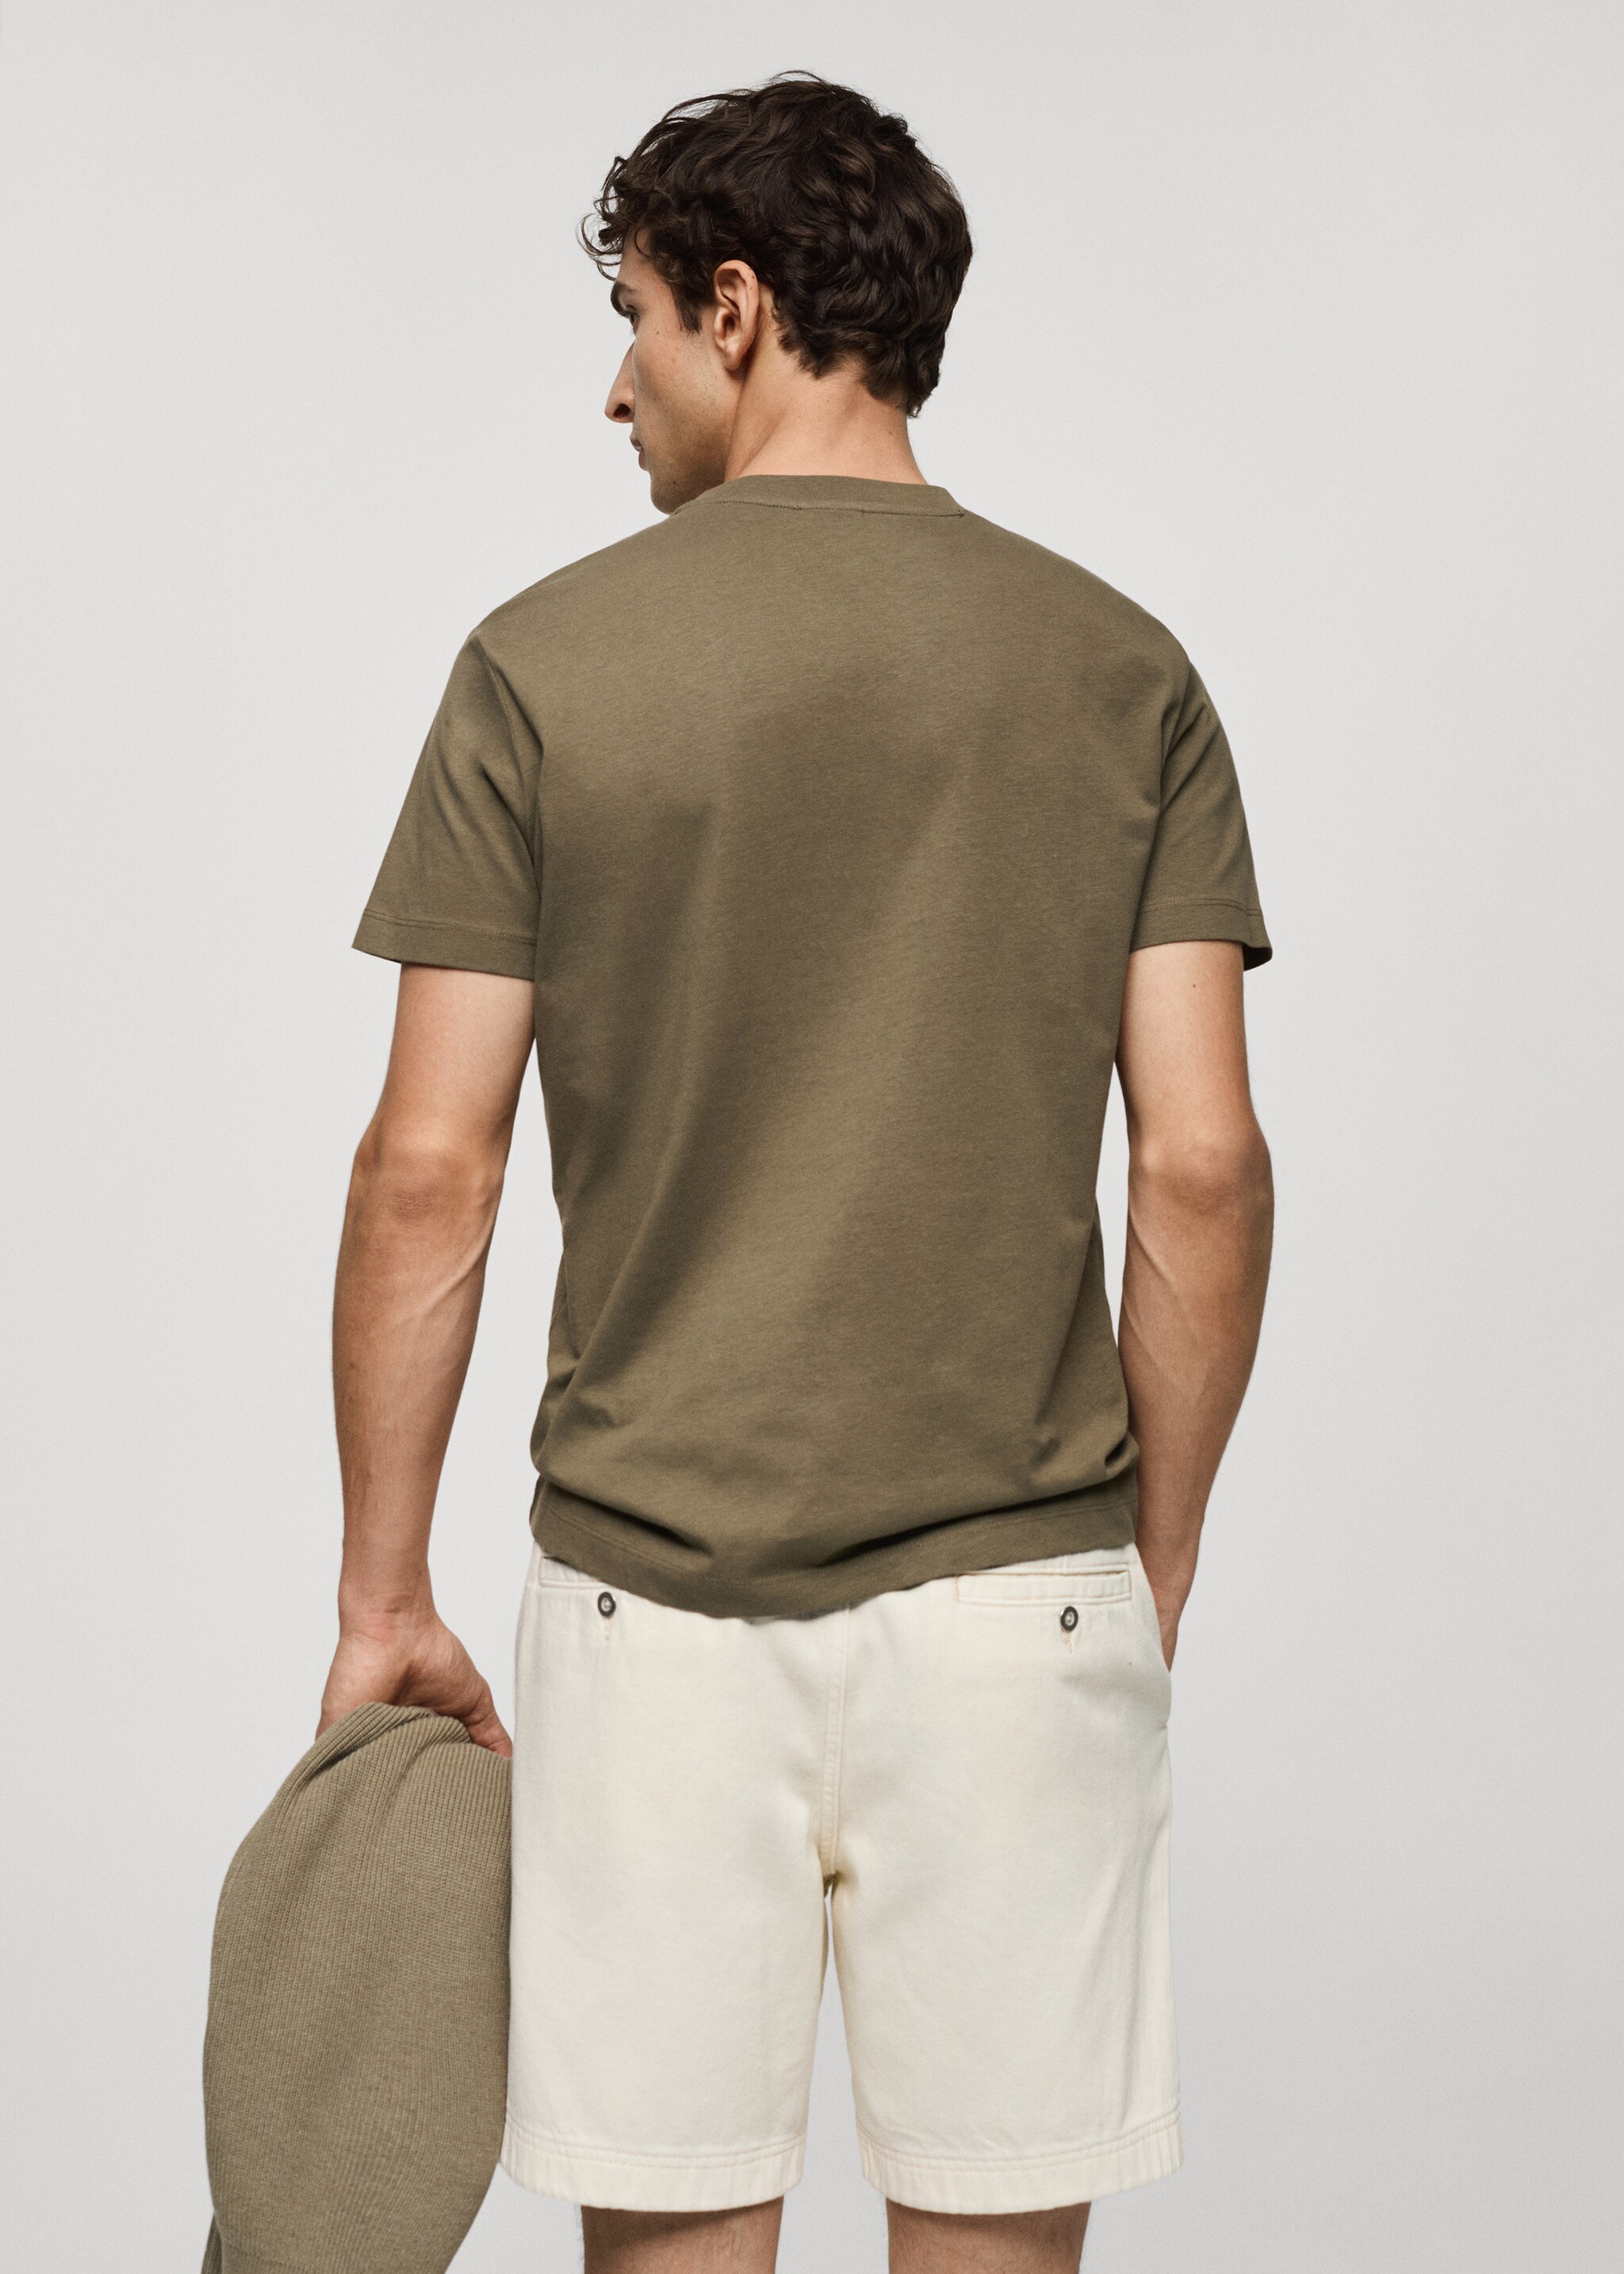 Базовая футболка из хлопка стретч - Обратная сторона изделия